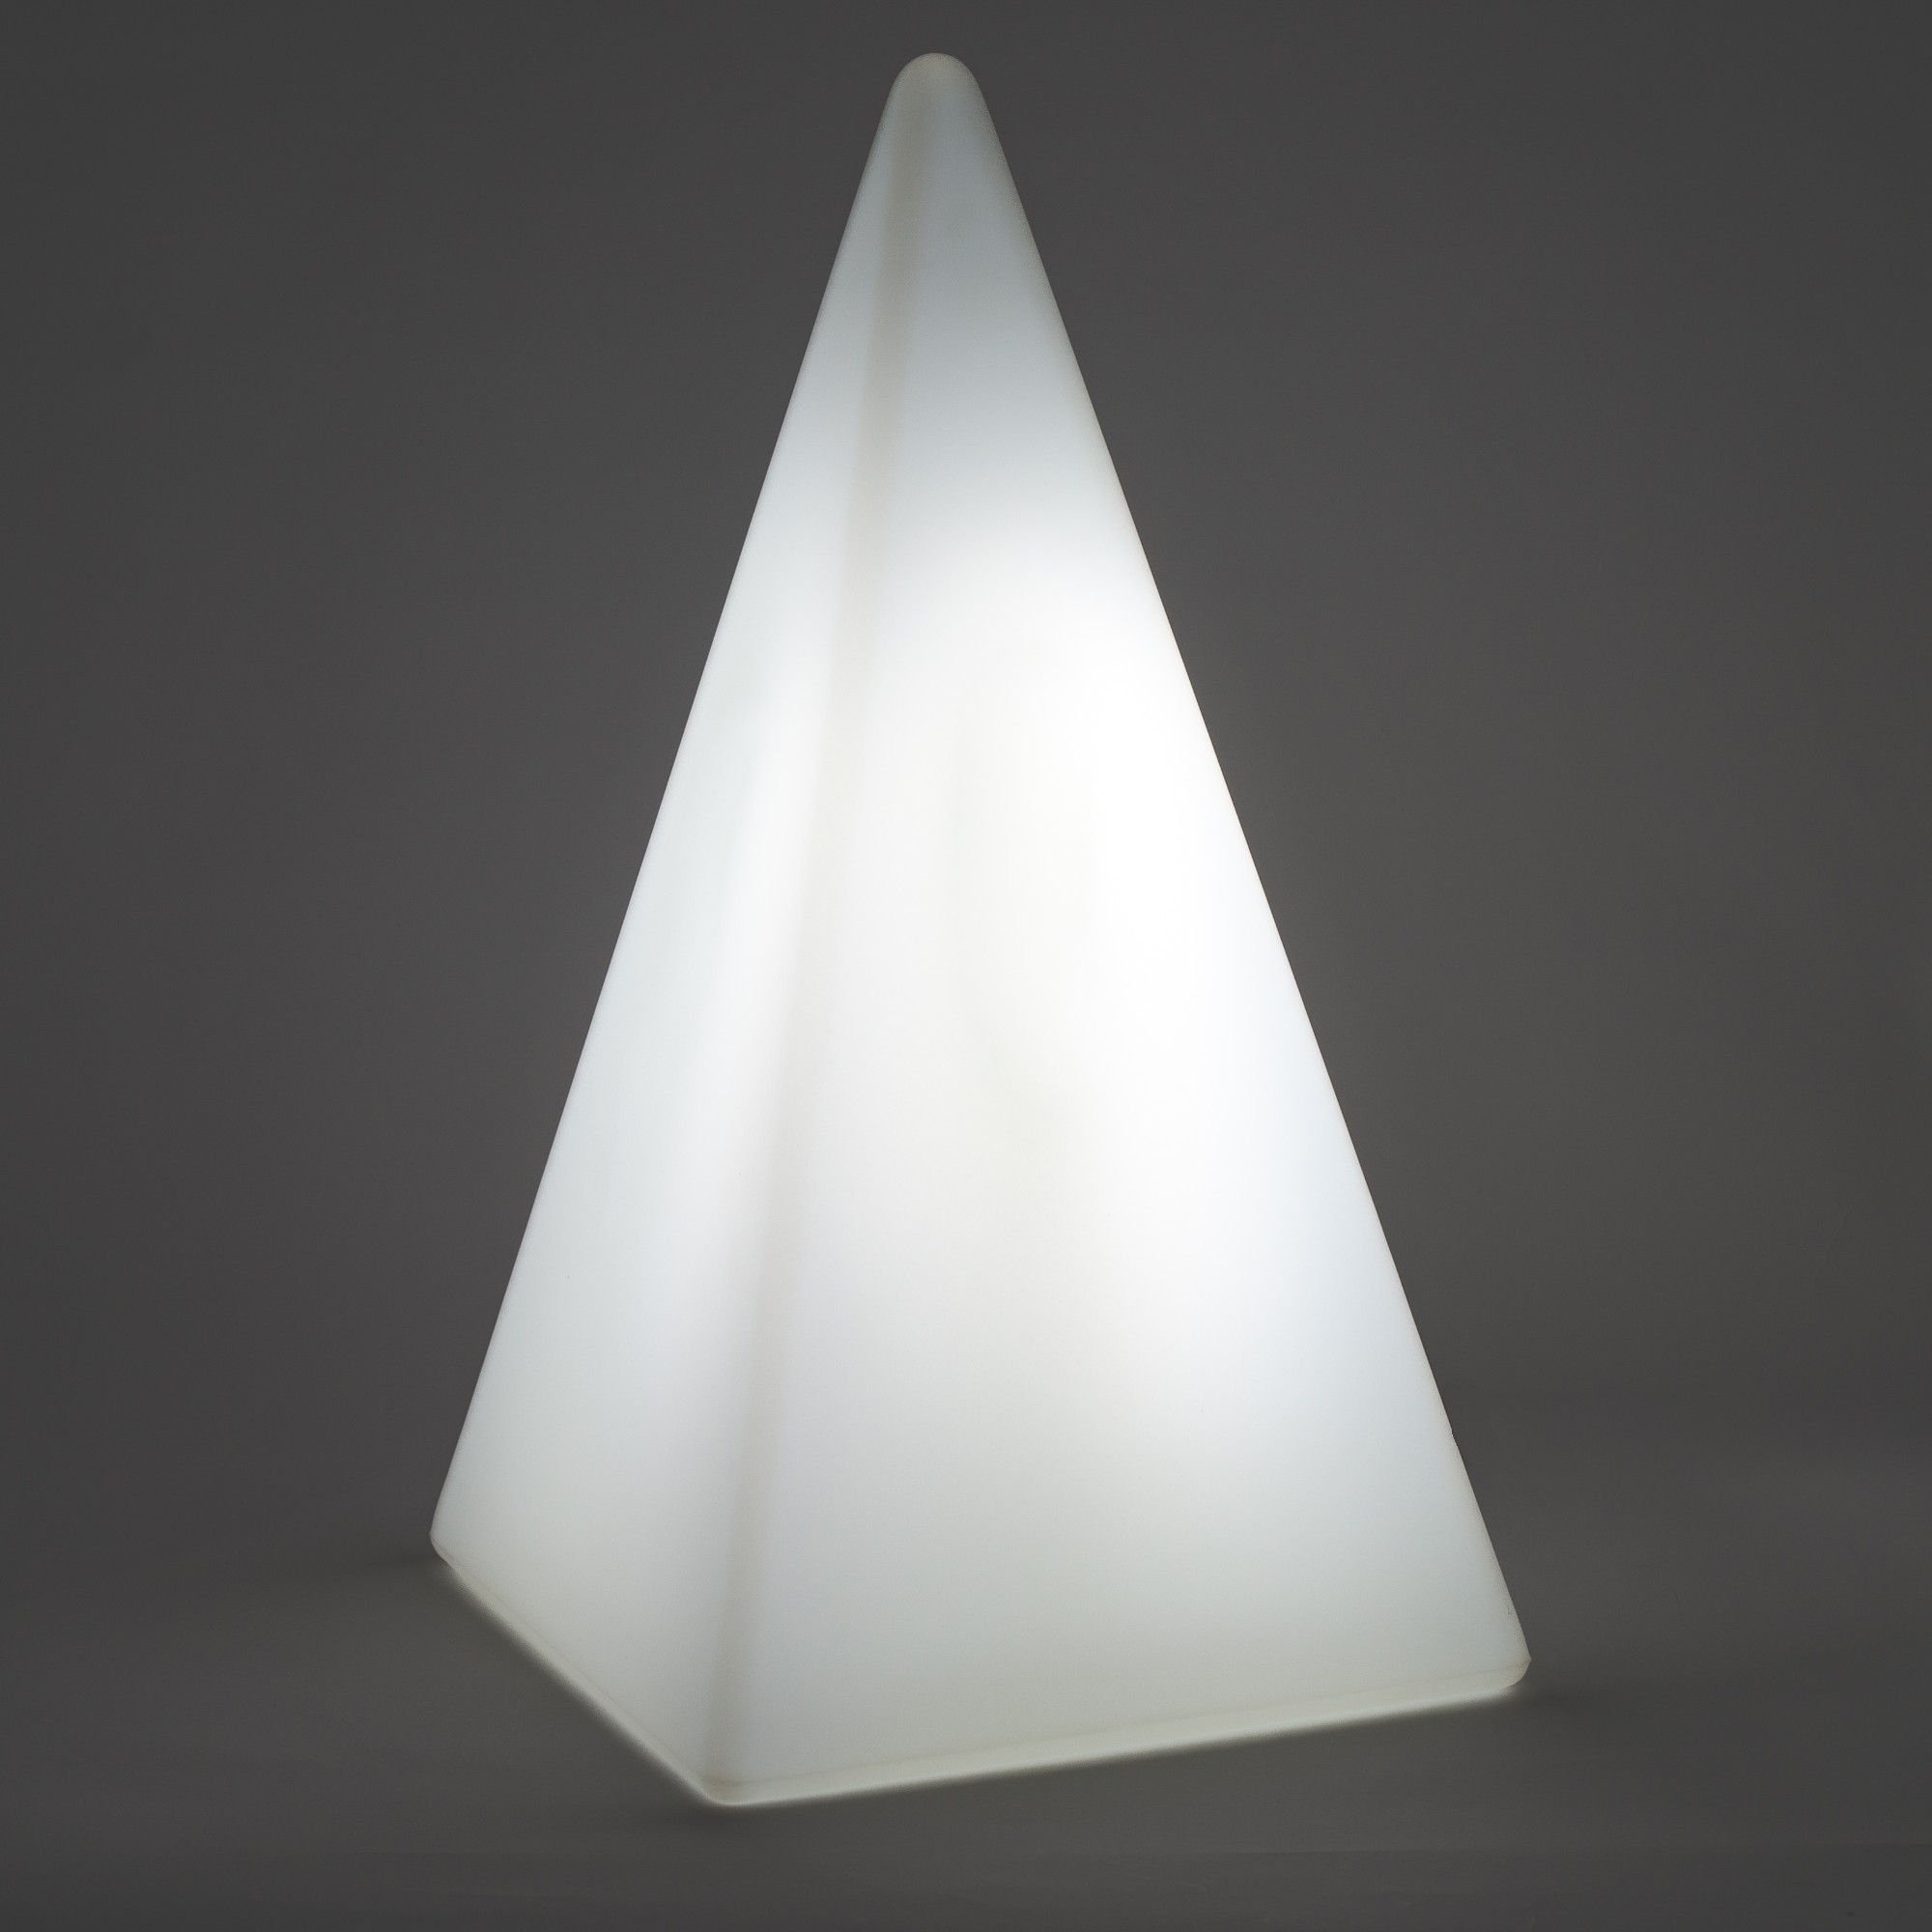 70104 Standleuchte Pyramide 36 cm der Firma EPSTEIN Design Leuchten